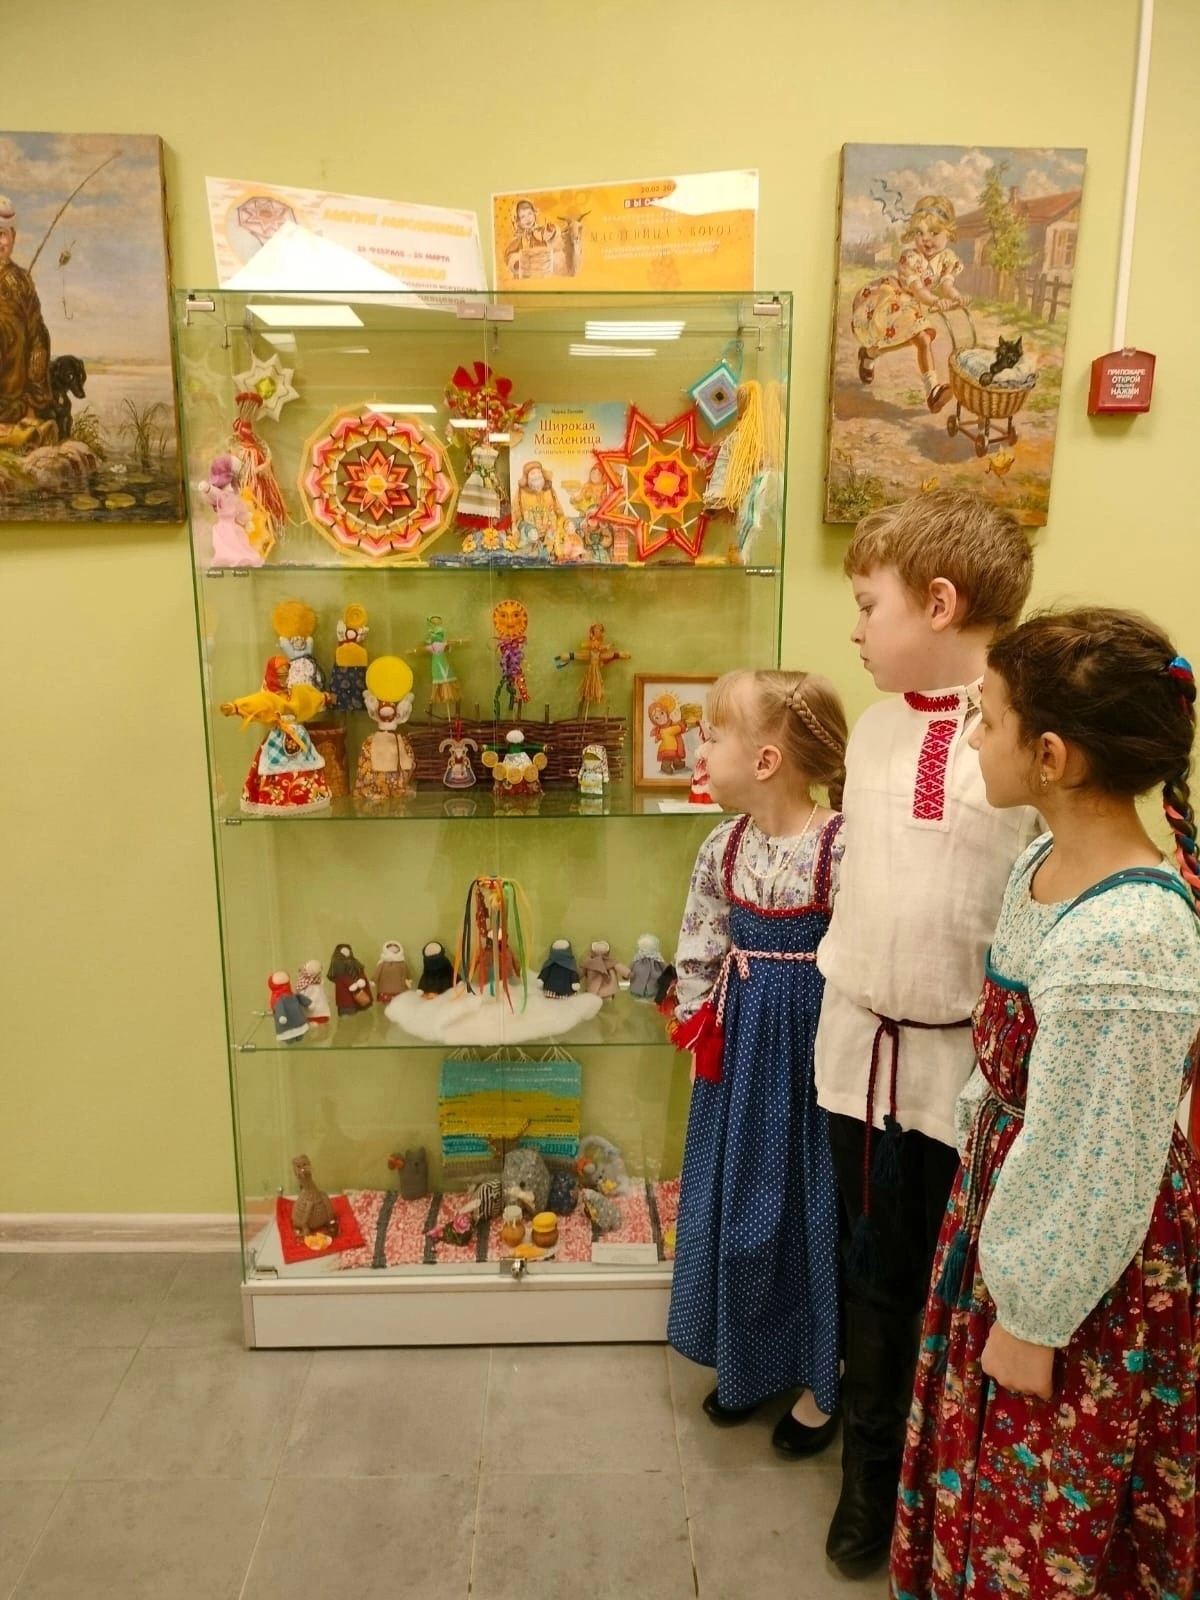 20 февраля в Детской районной библиотеке (г. Колпино, ул. Веры Слуцкой, д. 50) открылась выставка декоративно-прикладного искусства «Масленица у ворот».